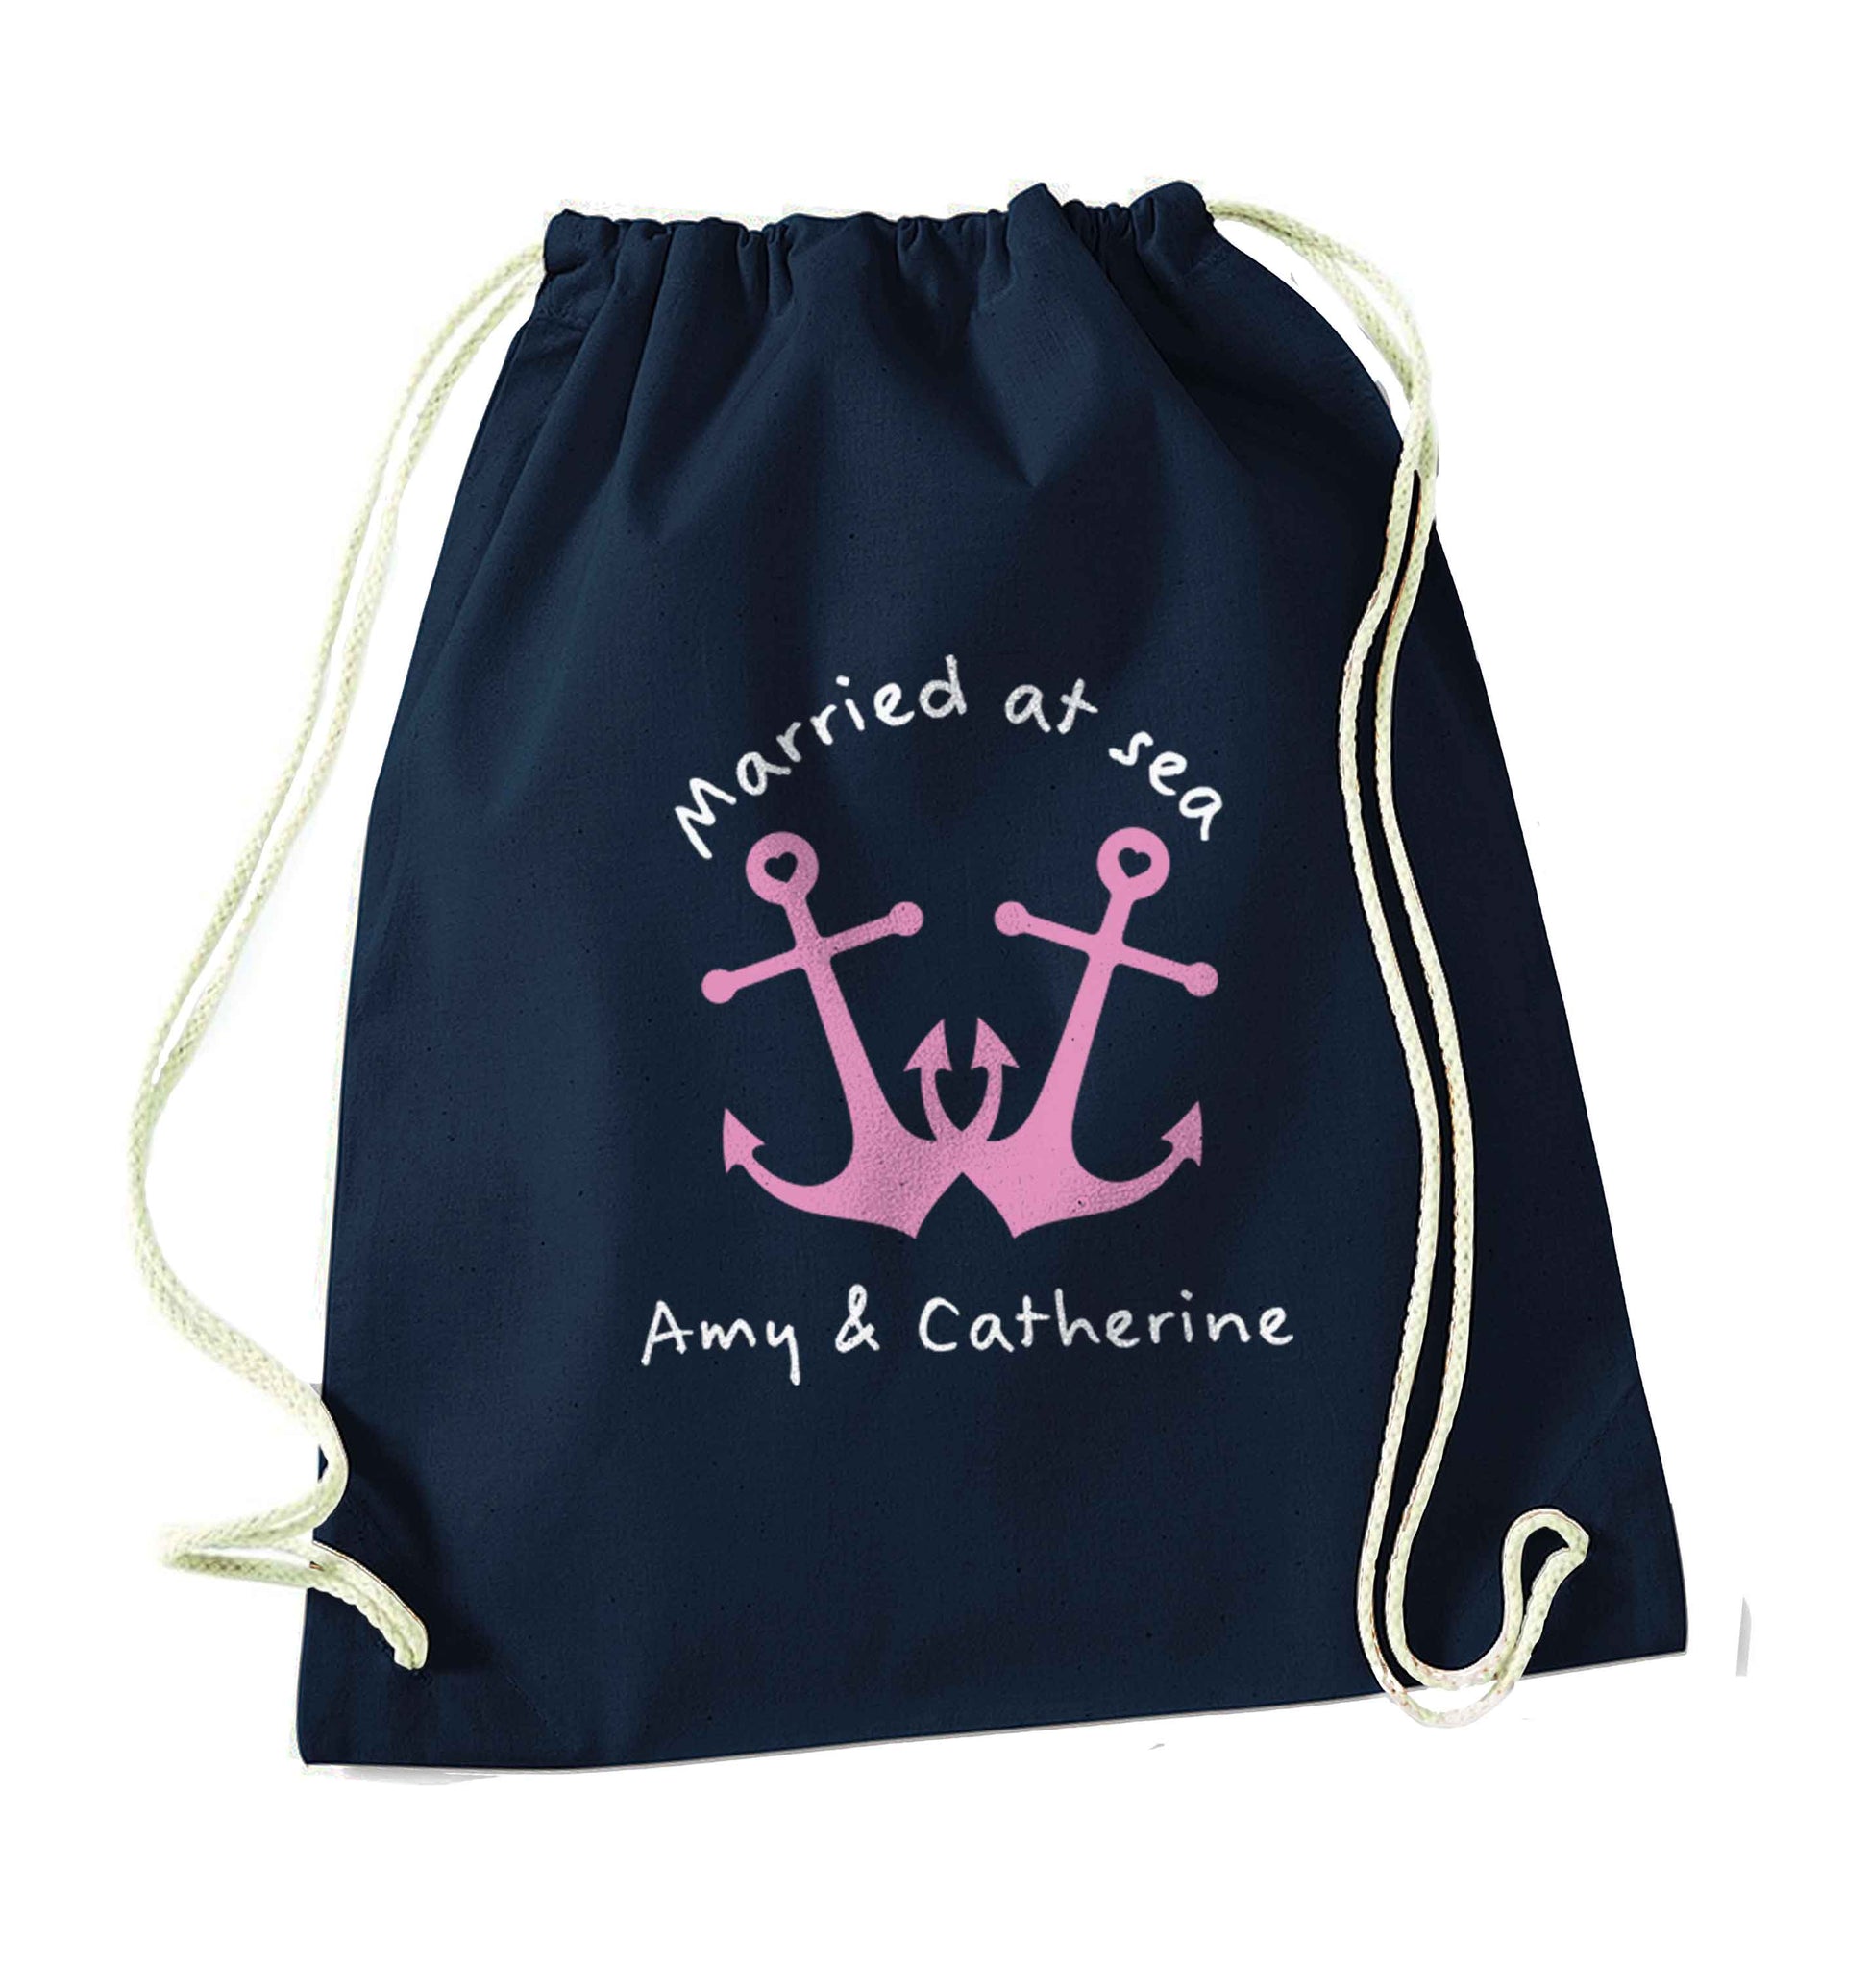 Married at sea pink anchors navy drawstring bag